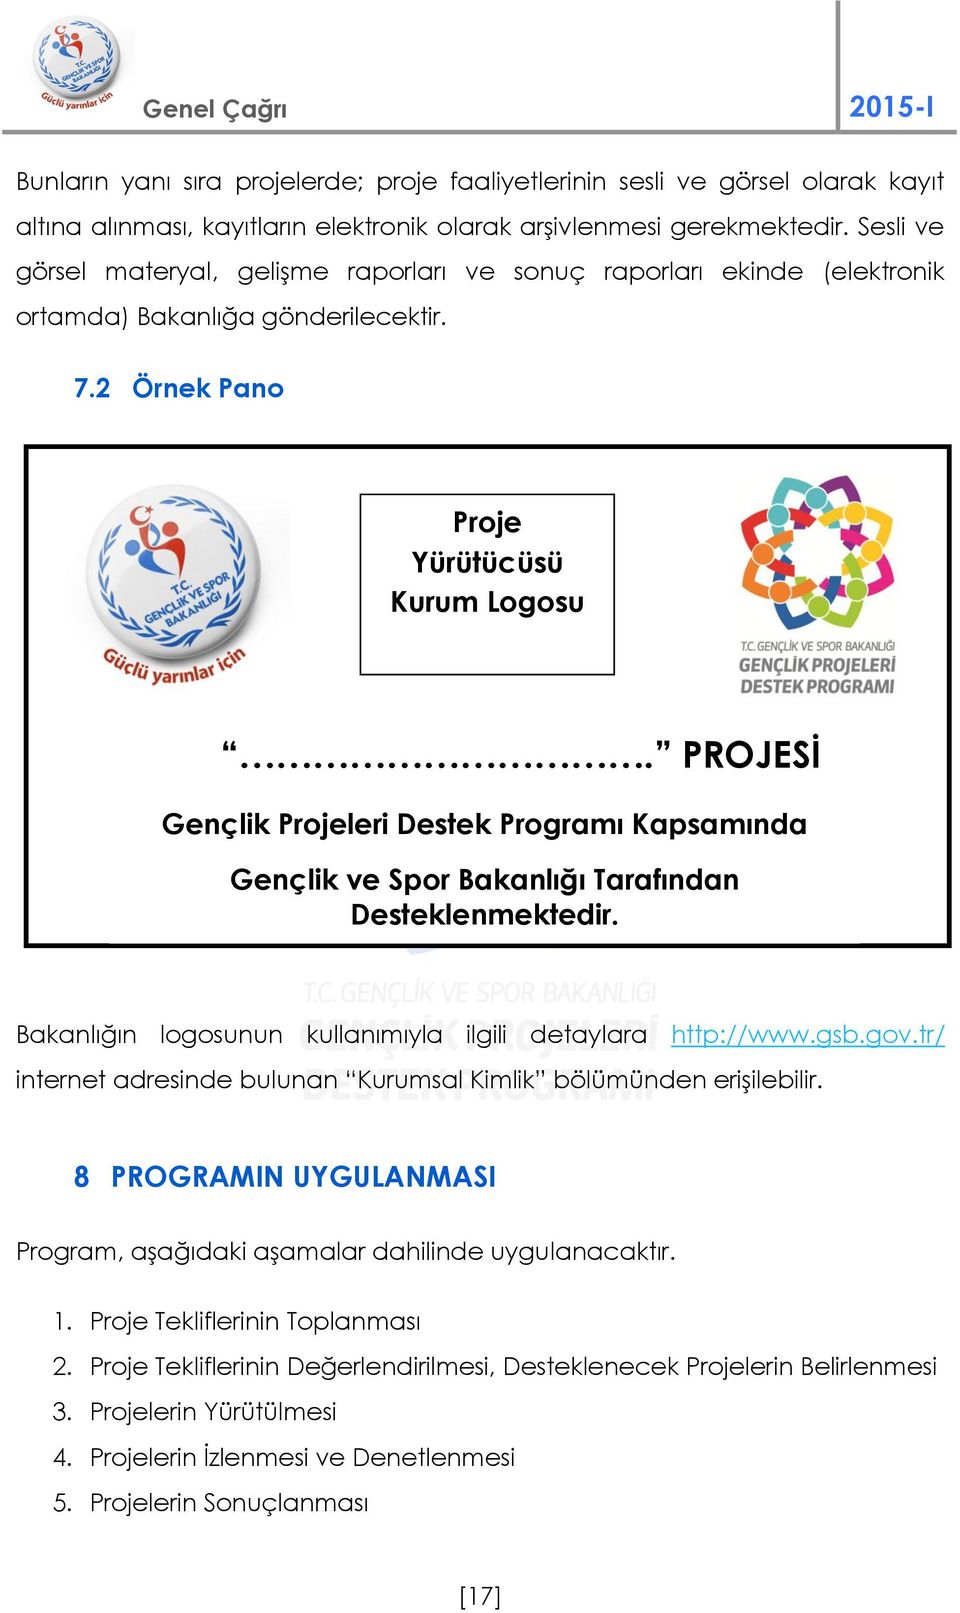 PROJESİ Gençlik Projeleri Destek Programı () Kapsamında Gençlik ve Spor Bakanlığı Tarafından Desteklenmektedir. Bakanlığın logosunun kullanımıyla ilgili detaylara http://www.gsb.gov.